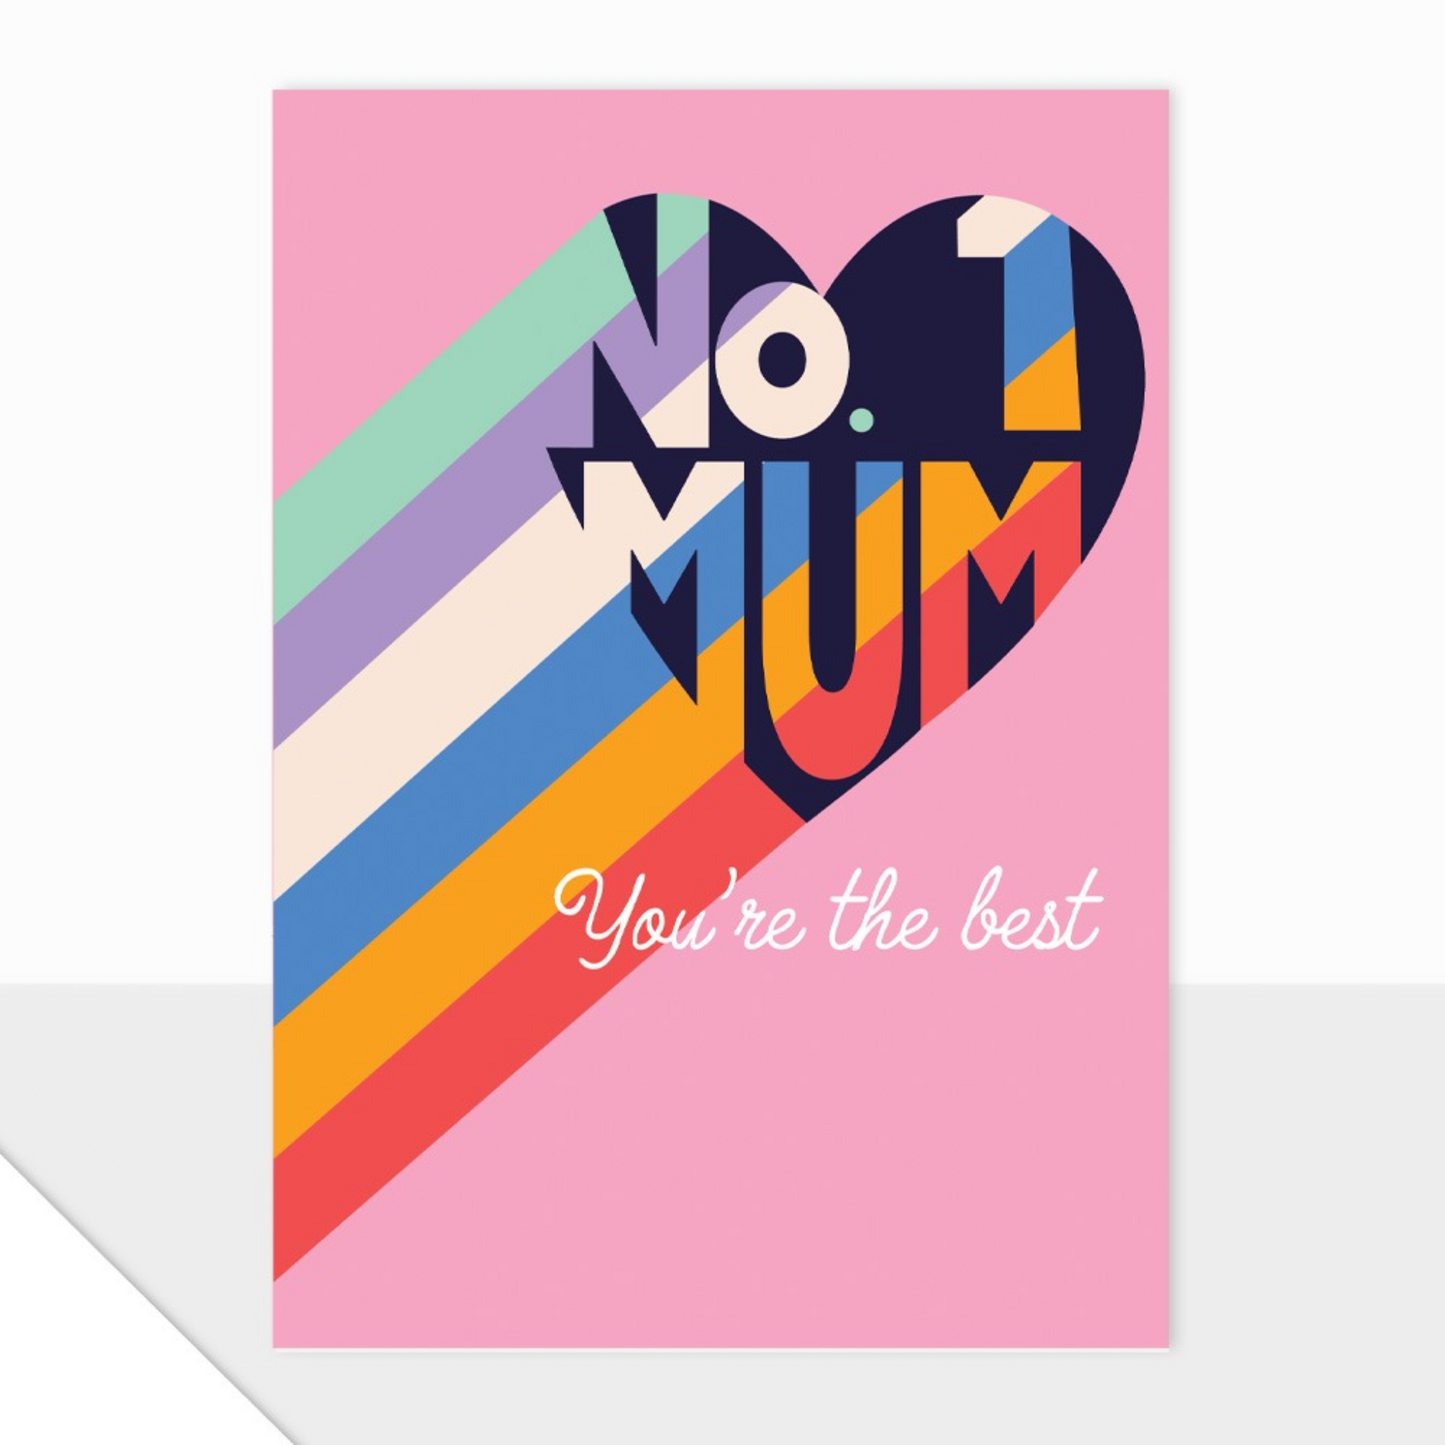 No 1 Mum Card